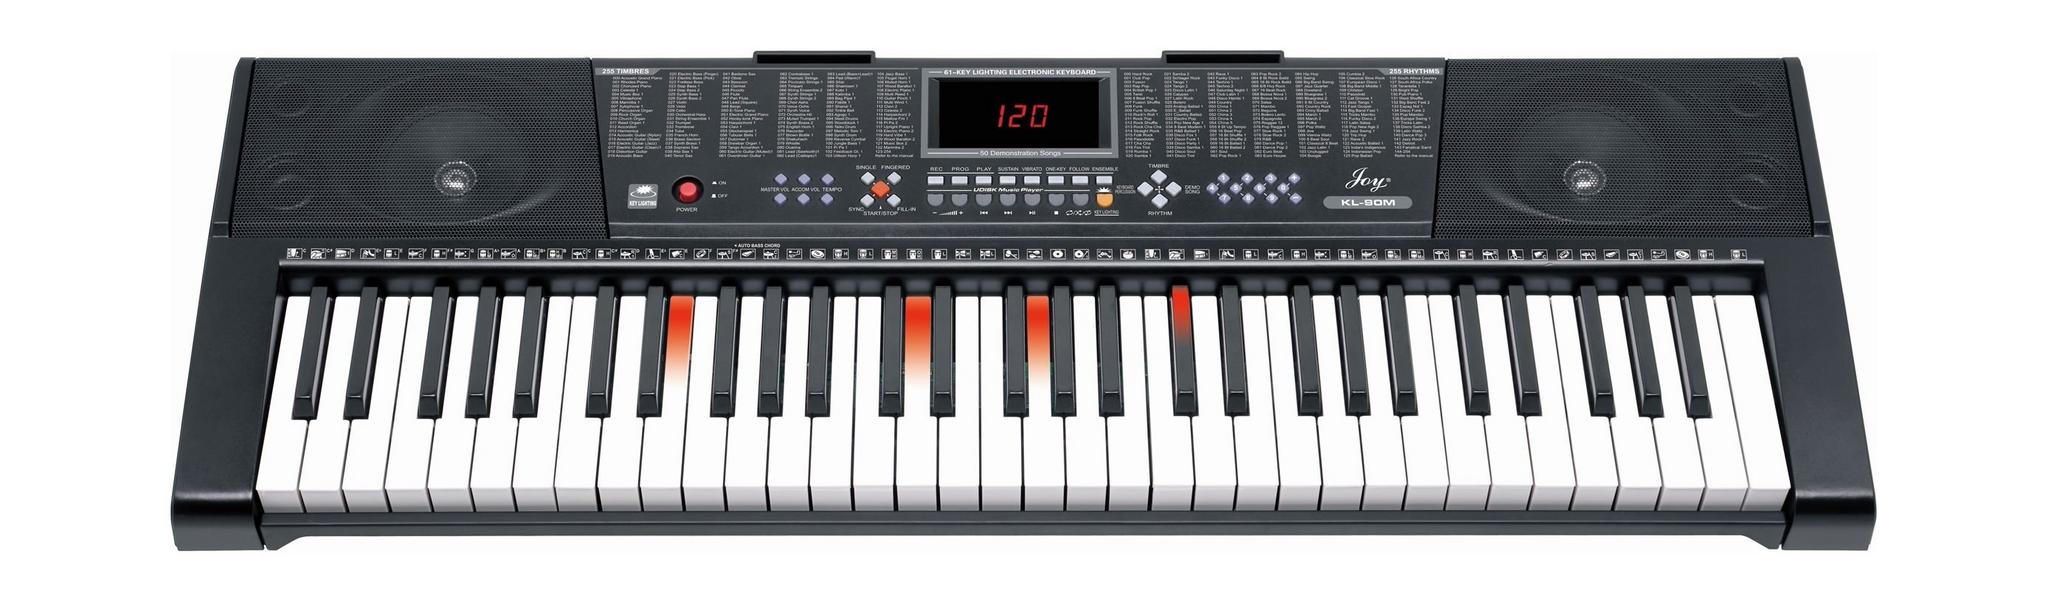 لوحة المفاتيح الموسيقية ٦١ مفتاح من ونسا - KL-90M